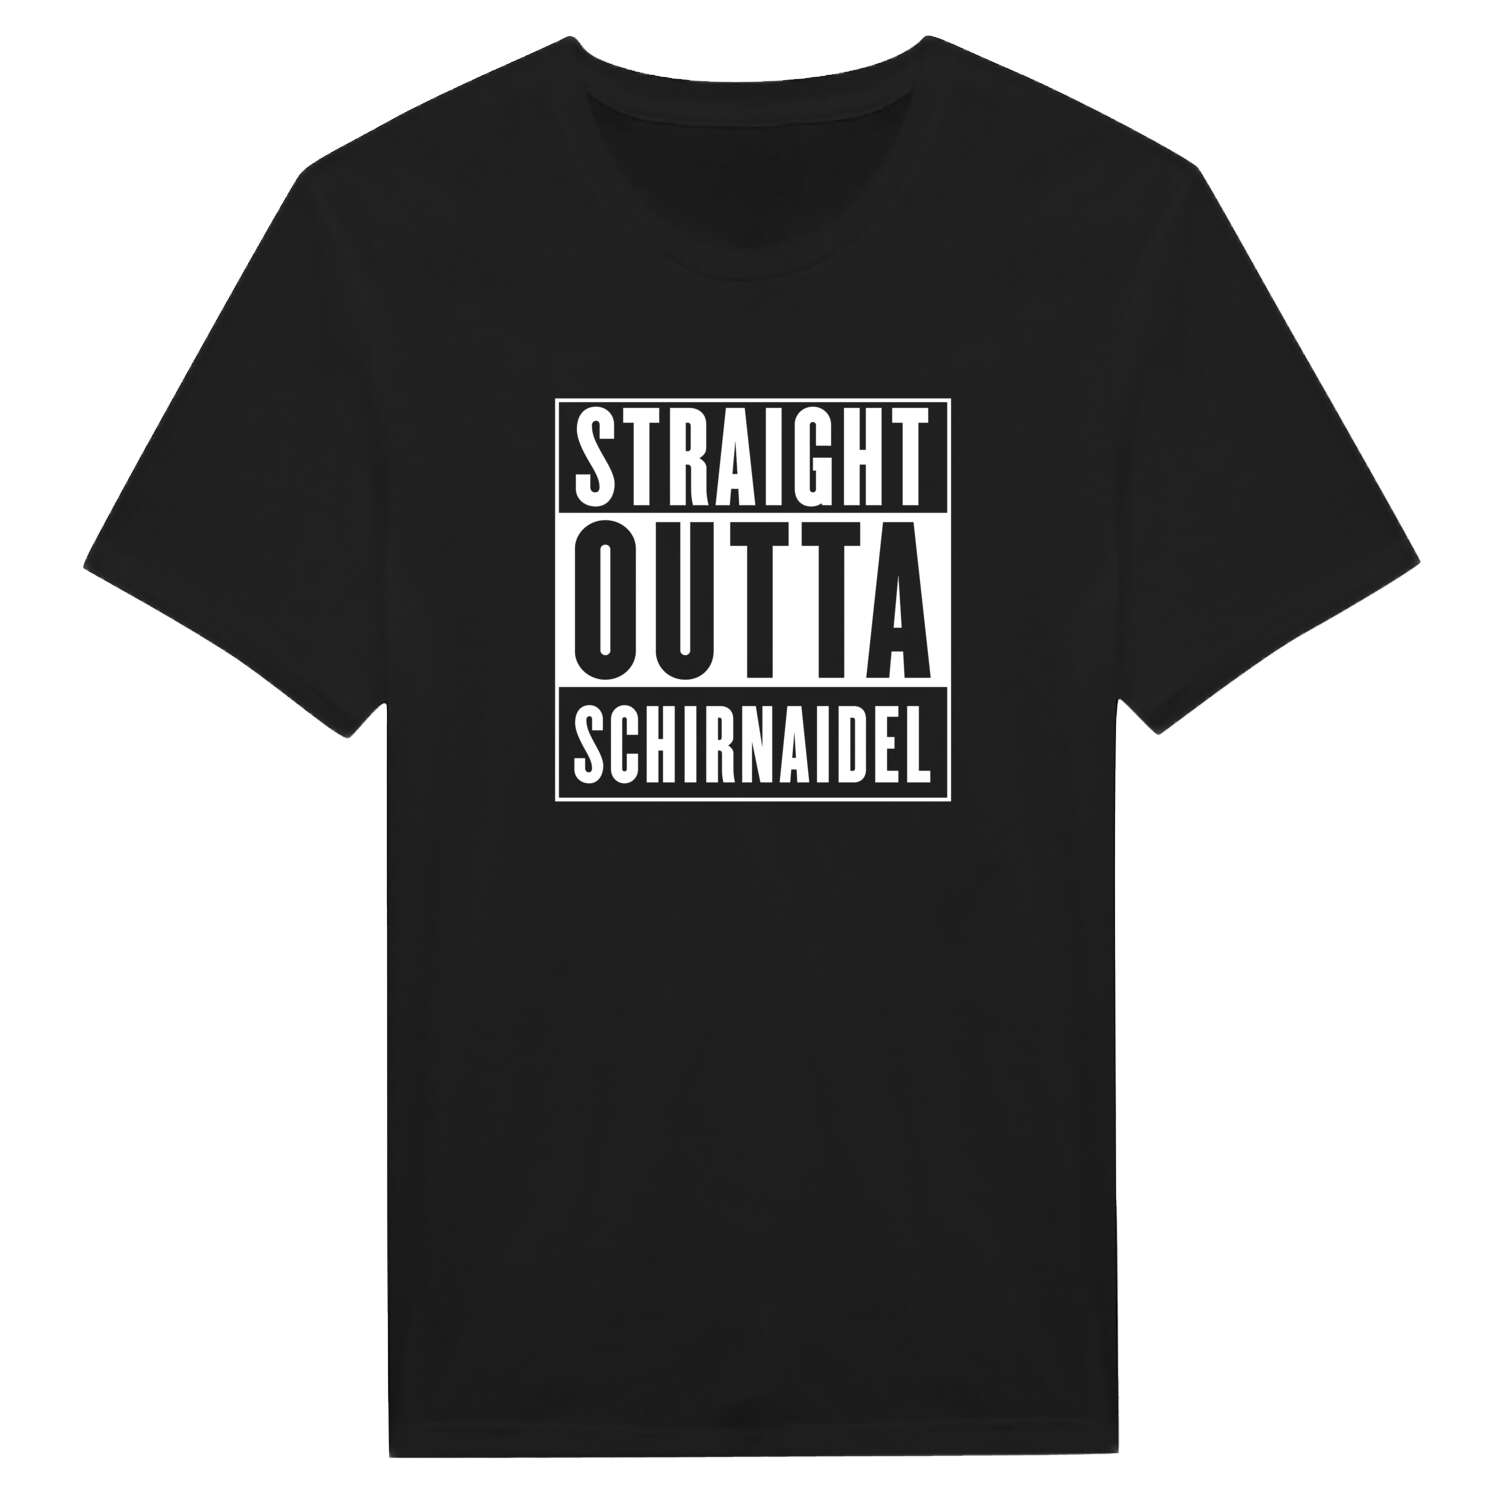 Schirnaidel T-Shirt »Straight Outta«